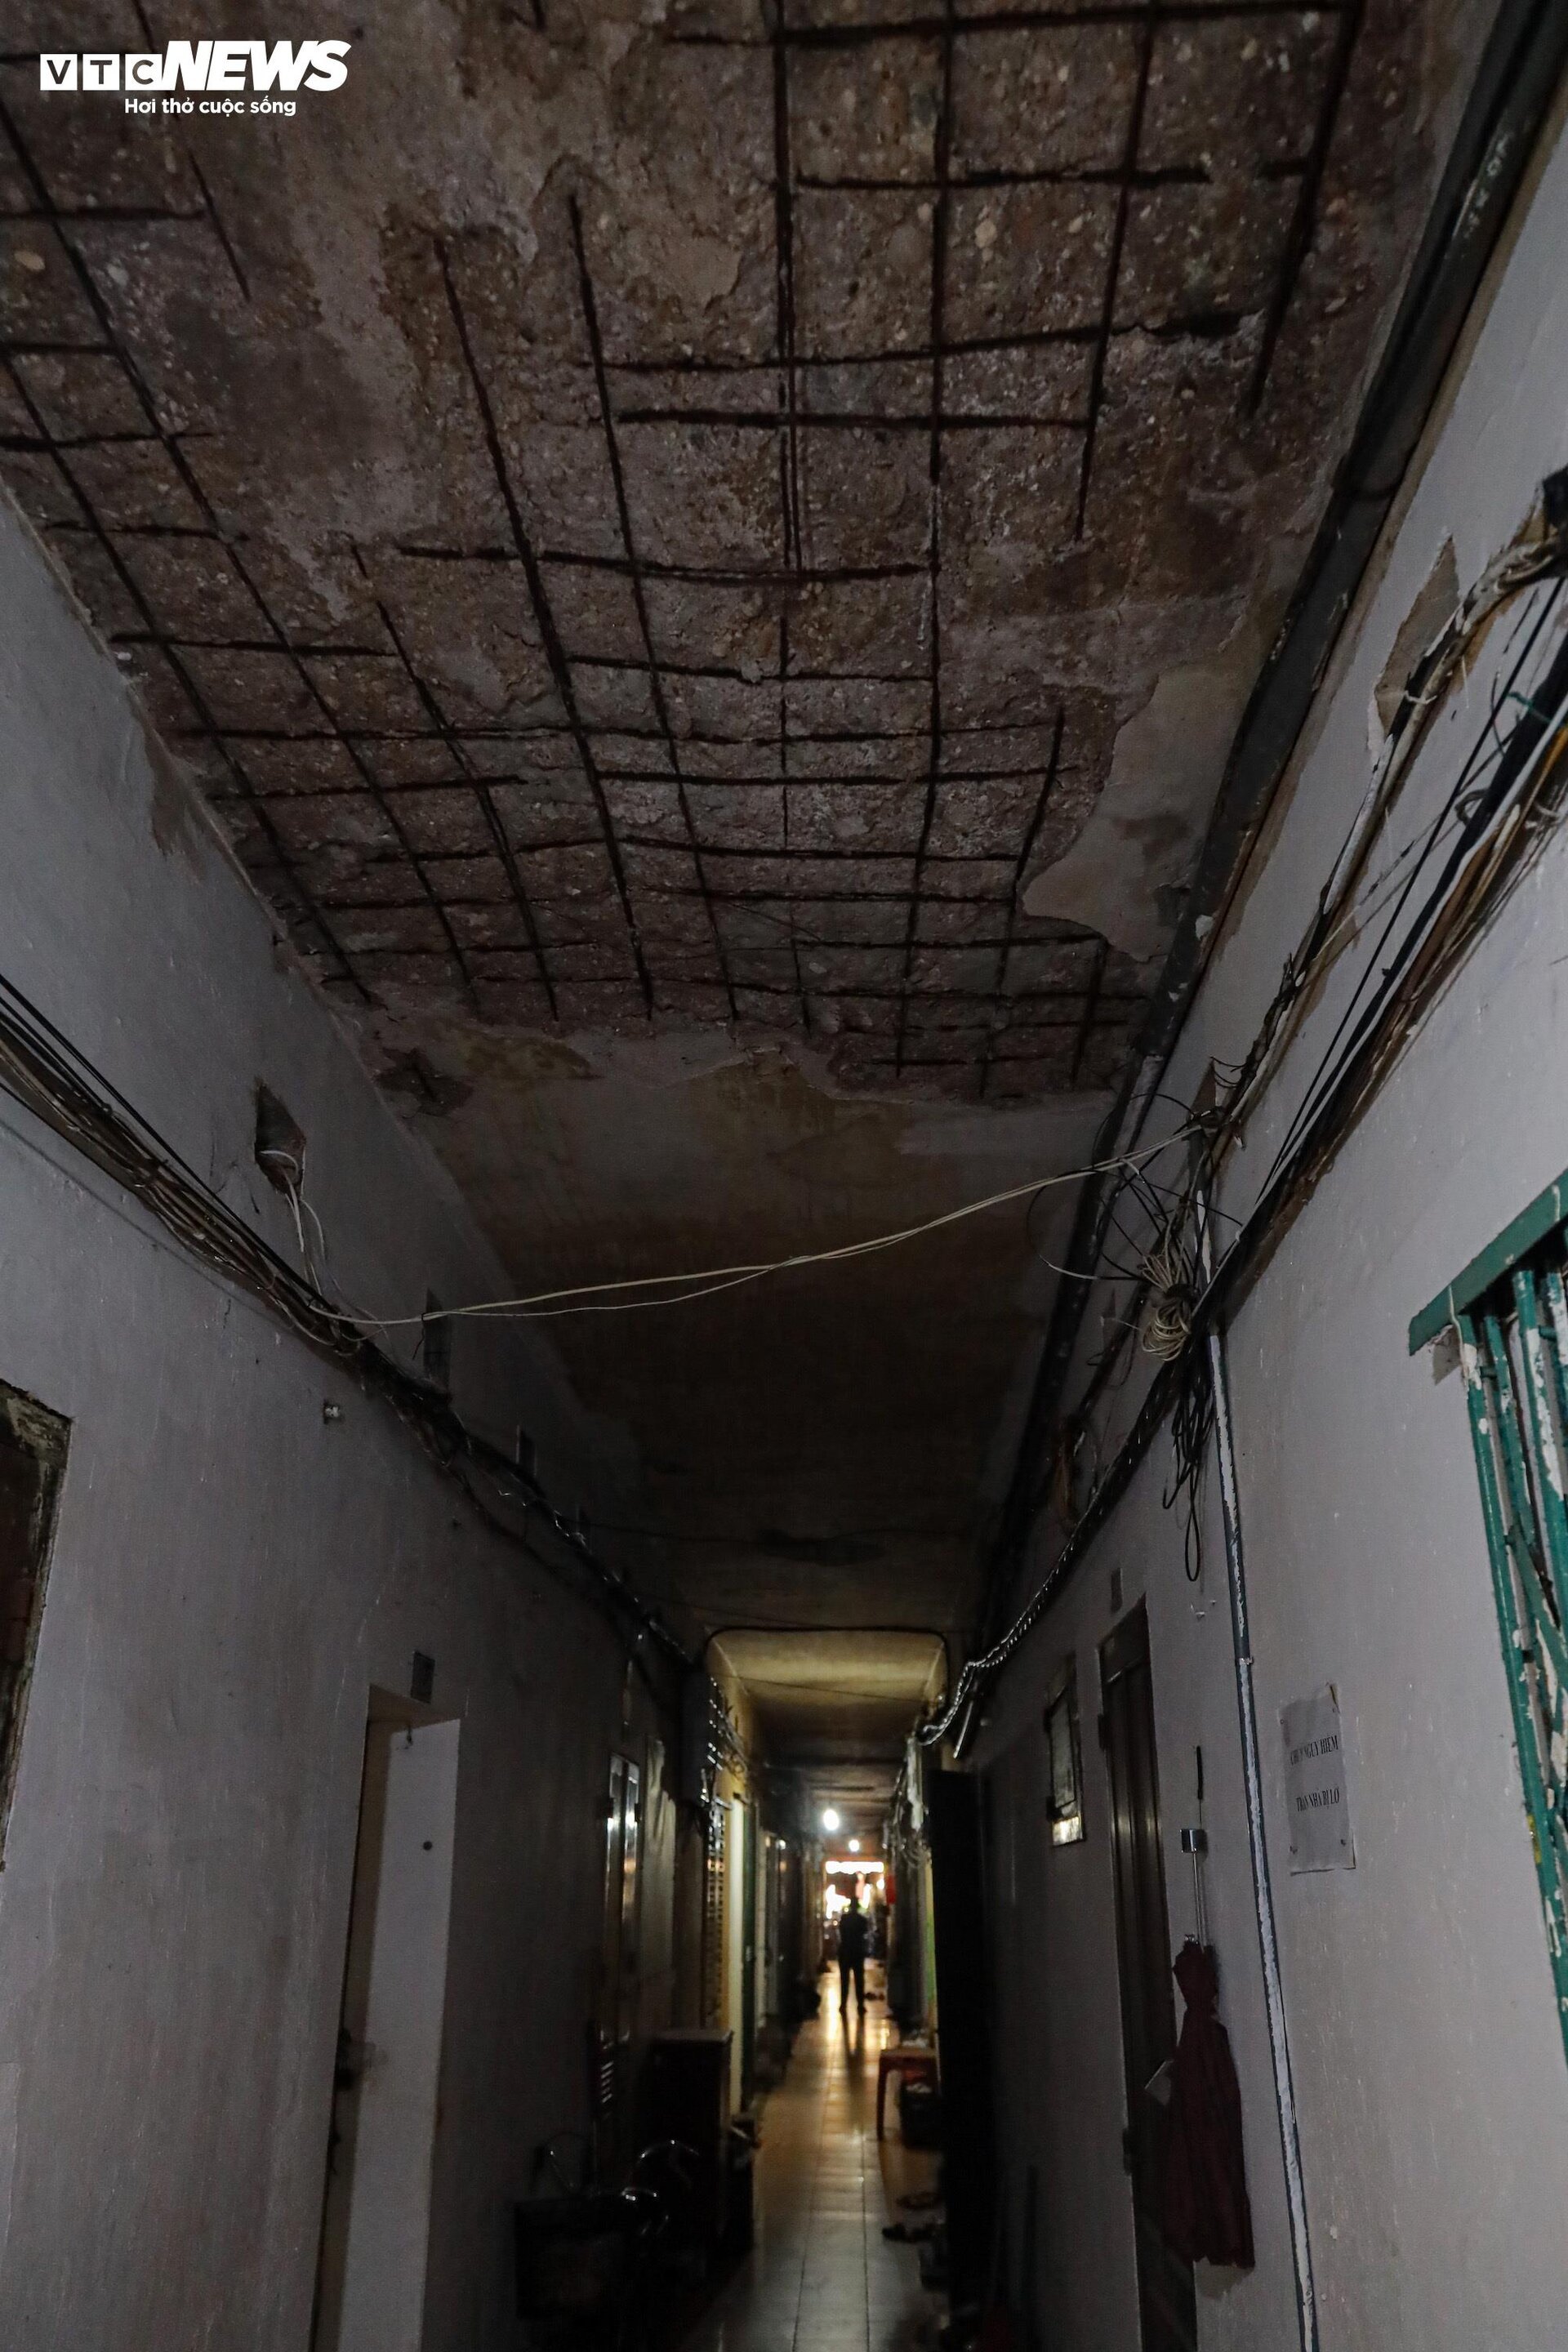 Bên trong ký túc xá cũ ở Hà Nội mỗi lần mưa là dột, nước tràn vào nhà - Ảnh 1.